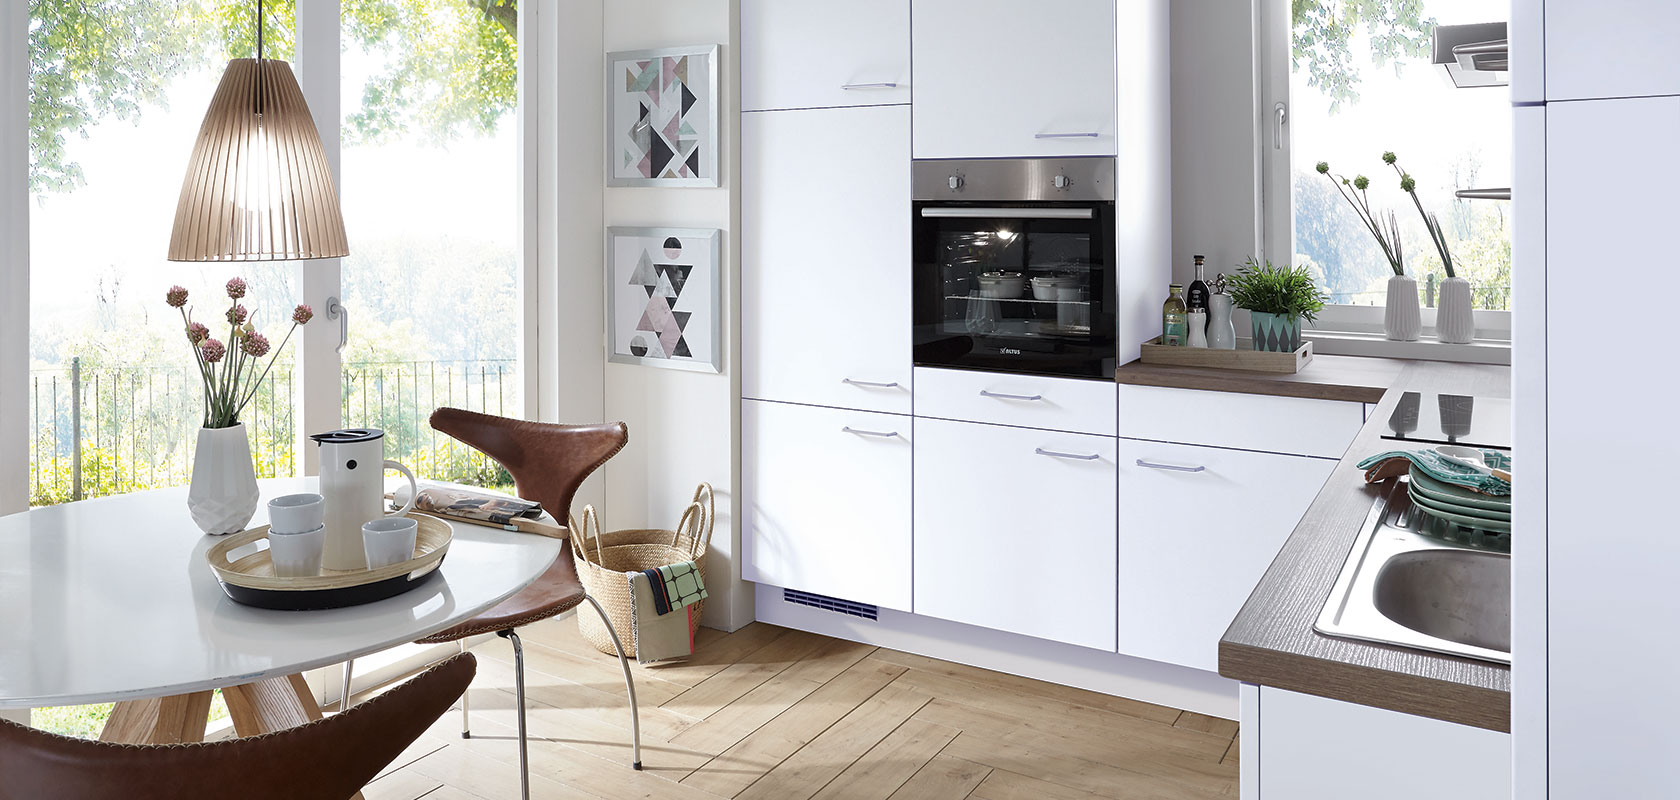 Helle, moderne Kücheninnenräume mit sauberen weißen Schränken, integrierten Geräten und einem gemütlichen Essbereich mit einem runden Tisch, der einen sonnigen Gartenblick bietet.